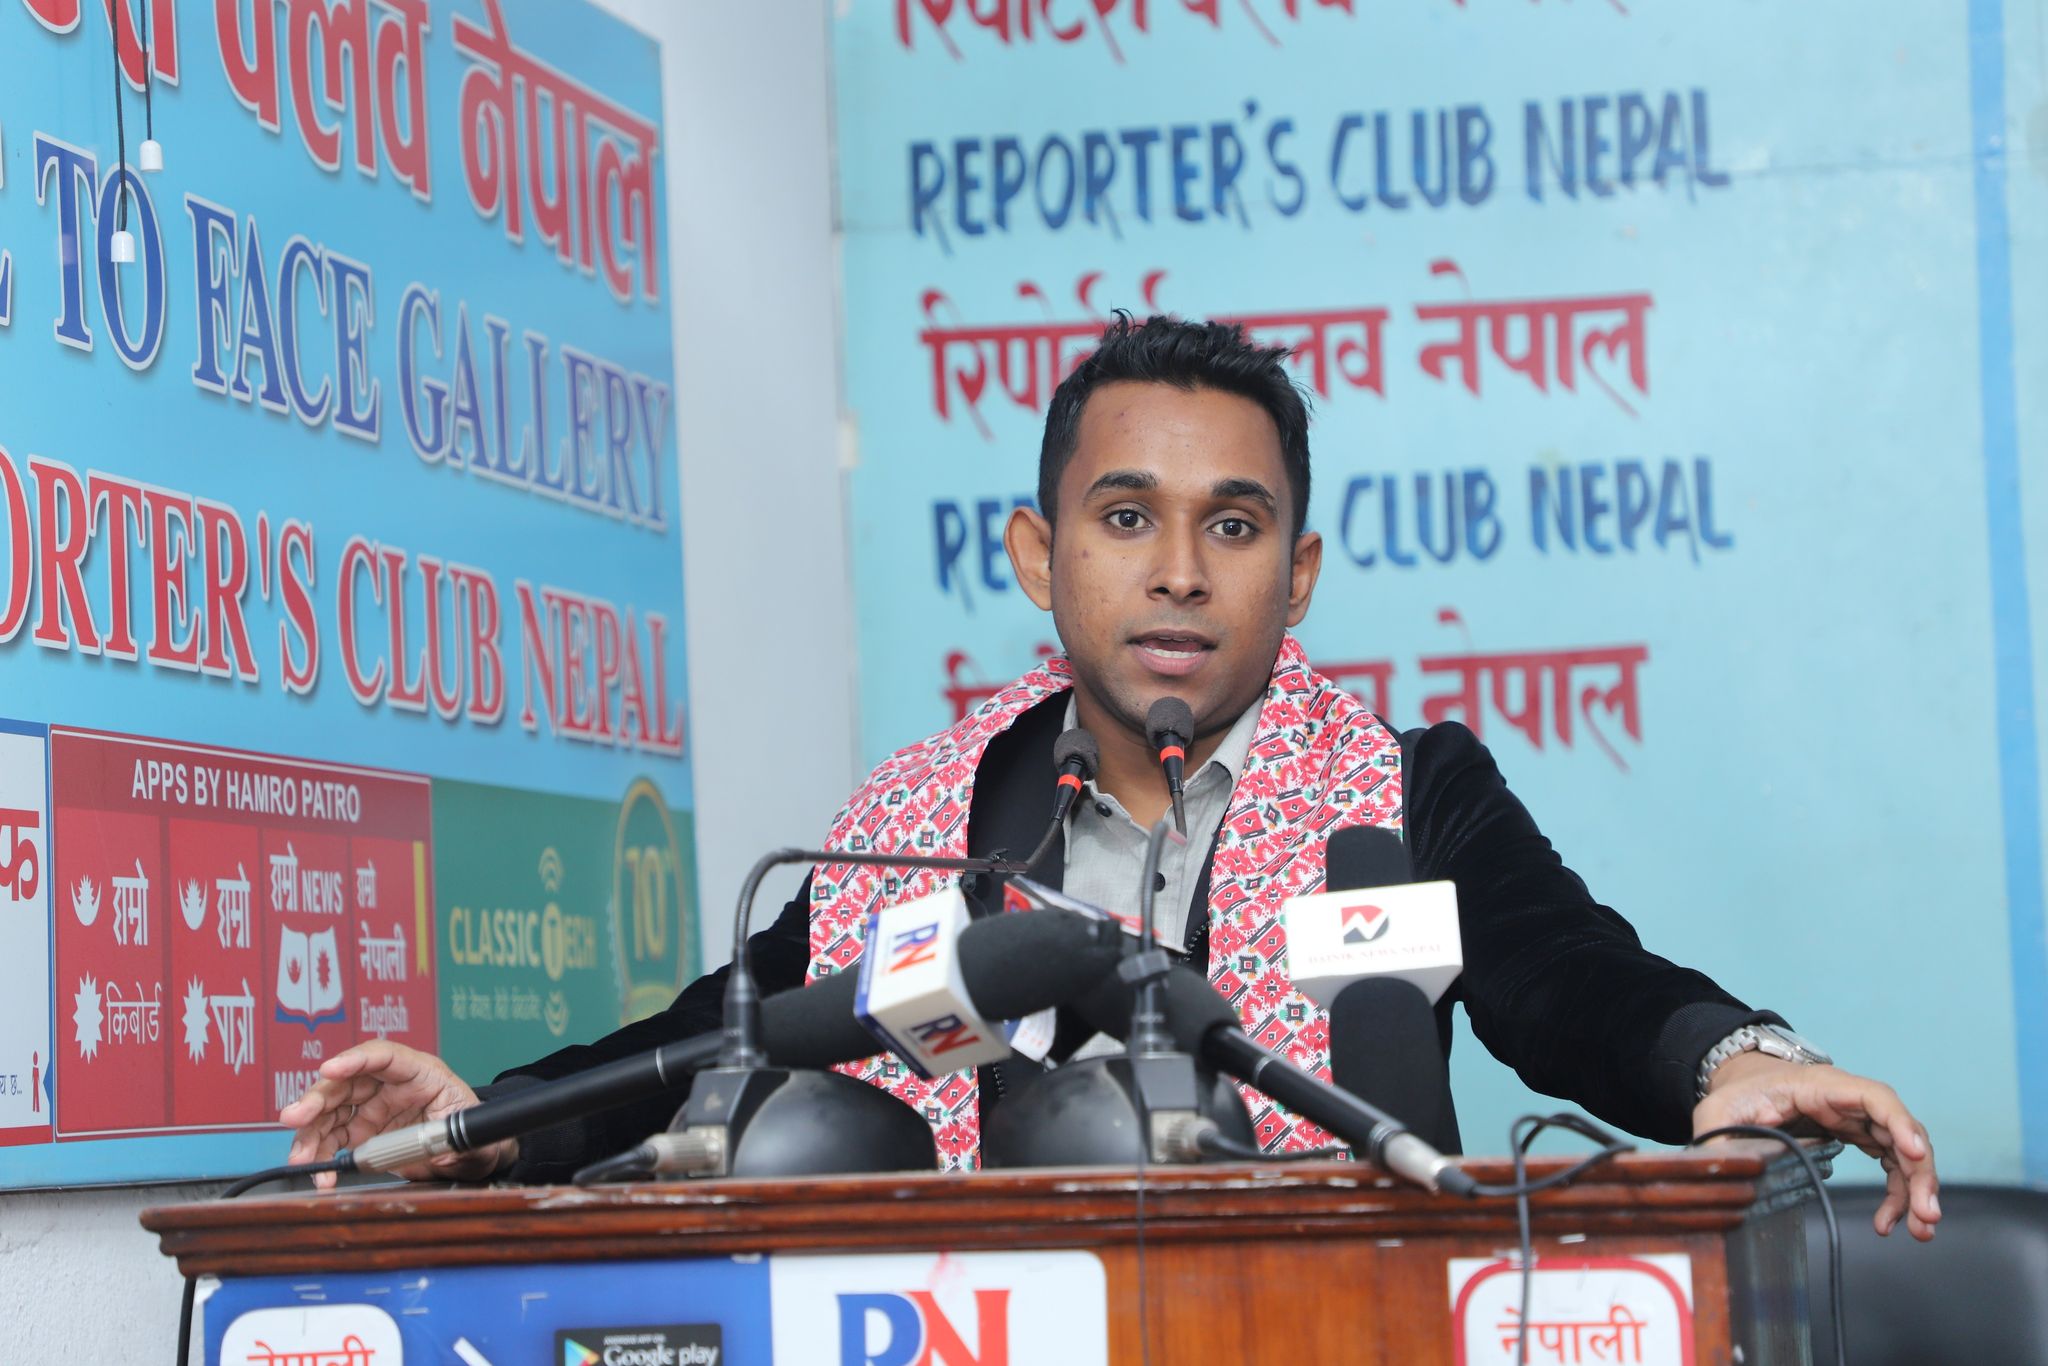 “I will always do my best to promote Nepal”